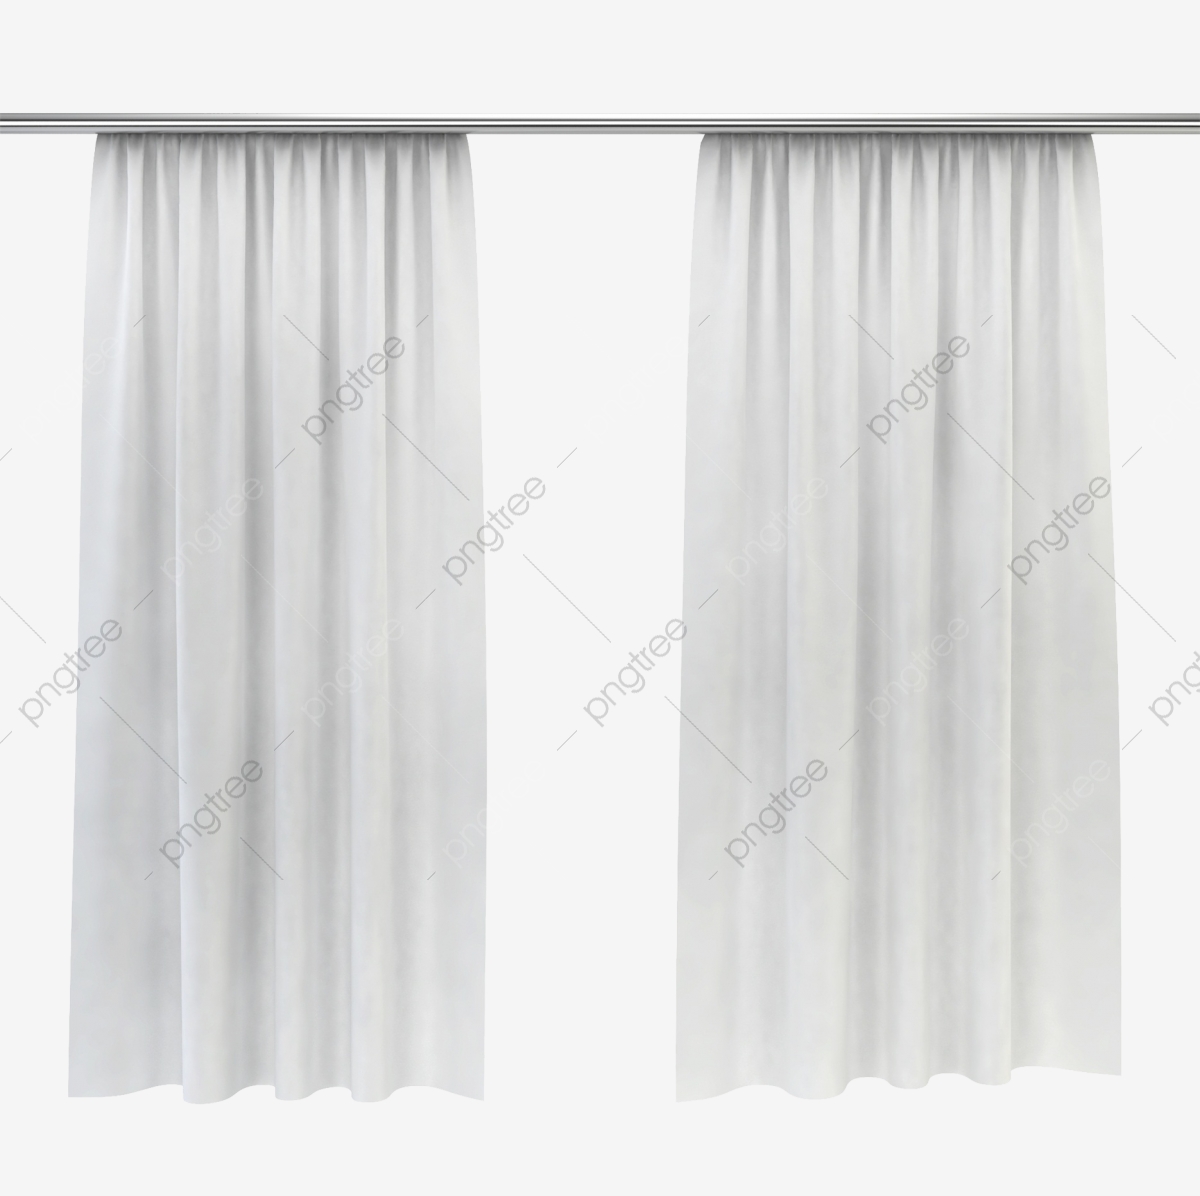 curtains clipart elegant